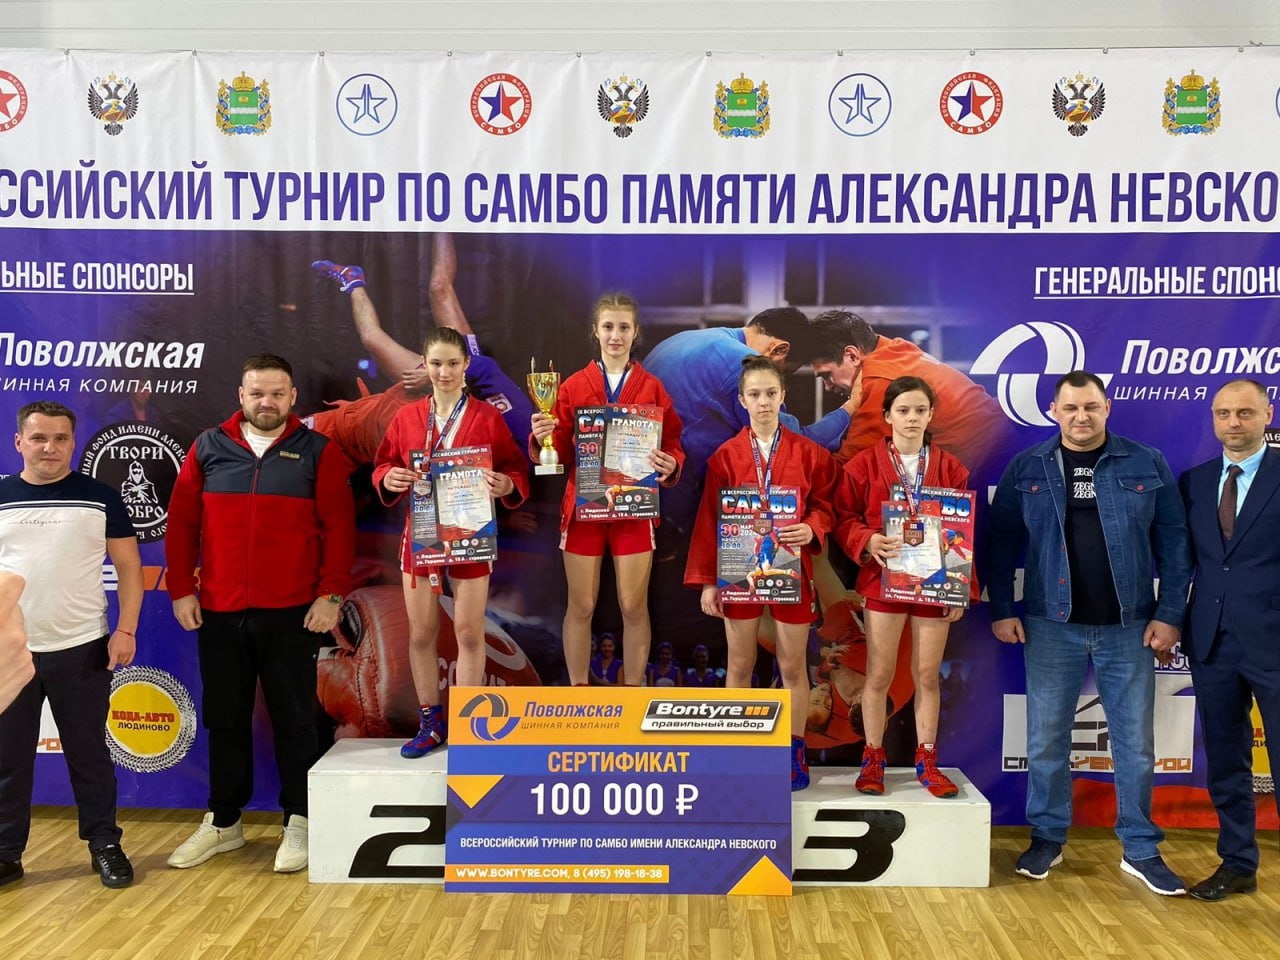 Тулячка выиграла на Всероссийских соревнованиях по самбо